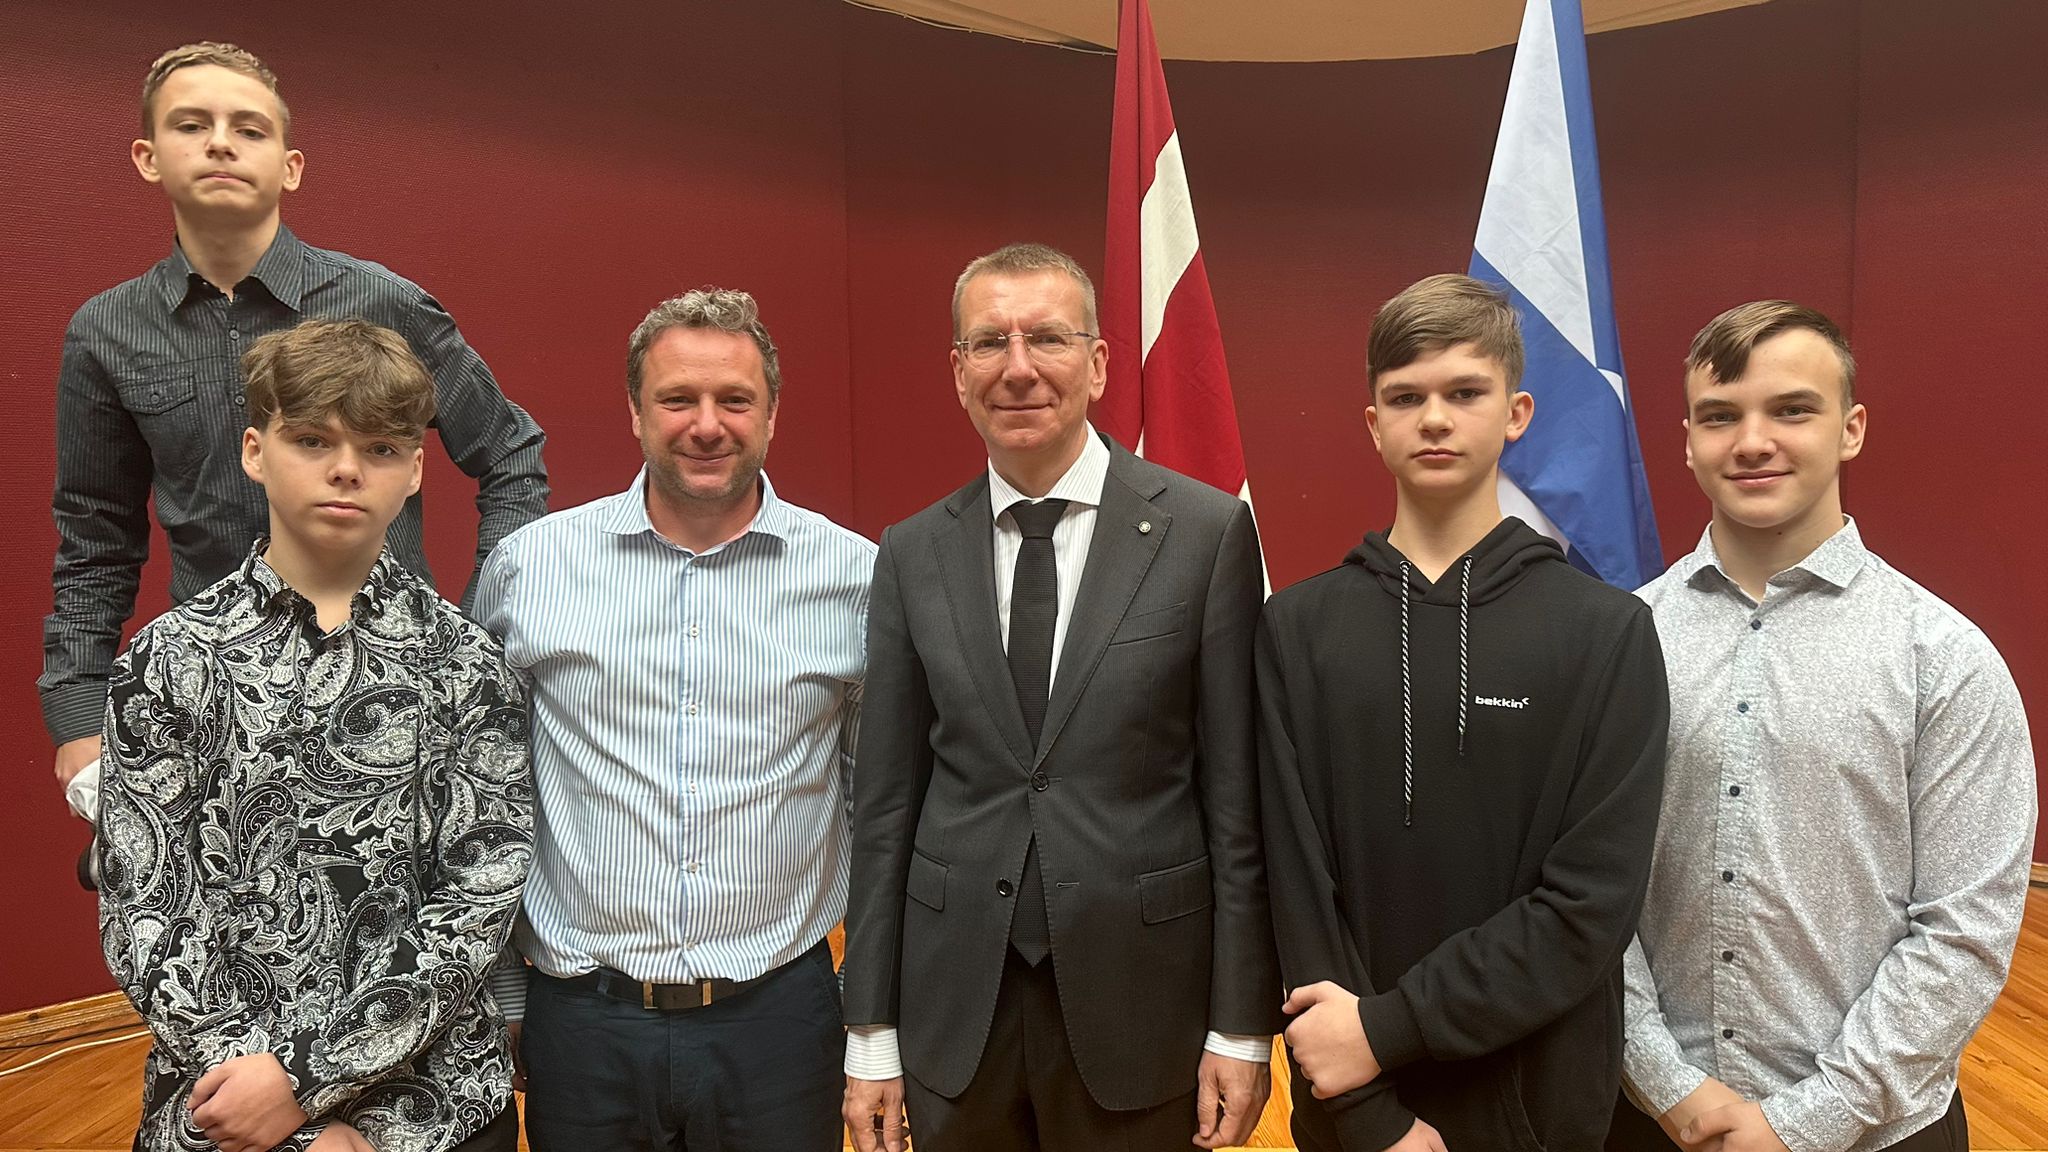 Naši žáci a pan ředitel Kosík se setkali s lotyšským prezidentem